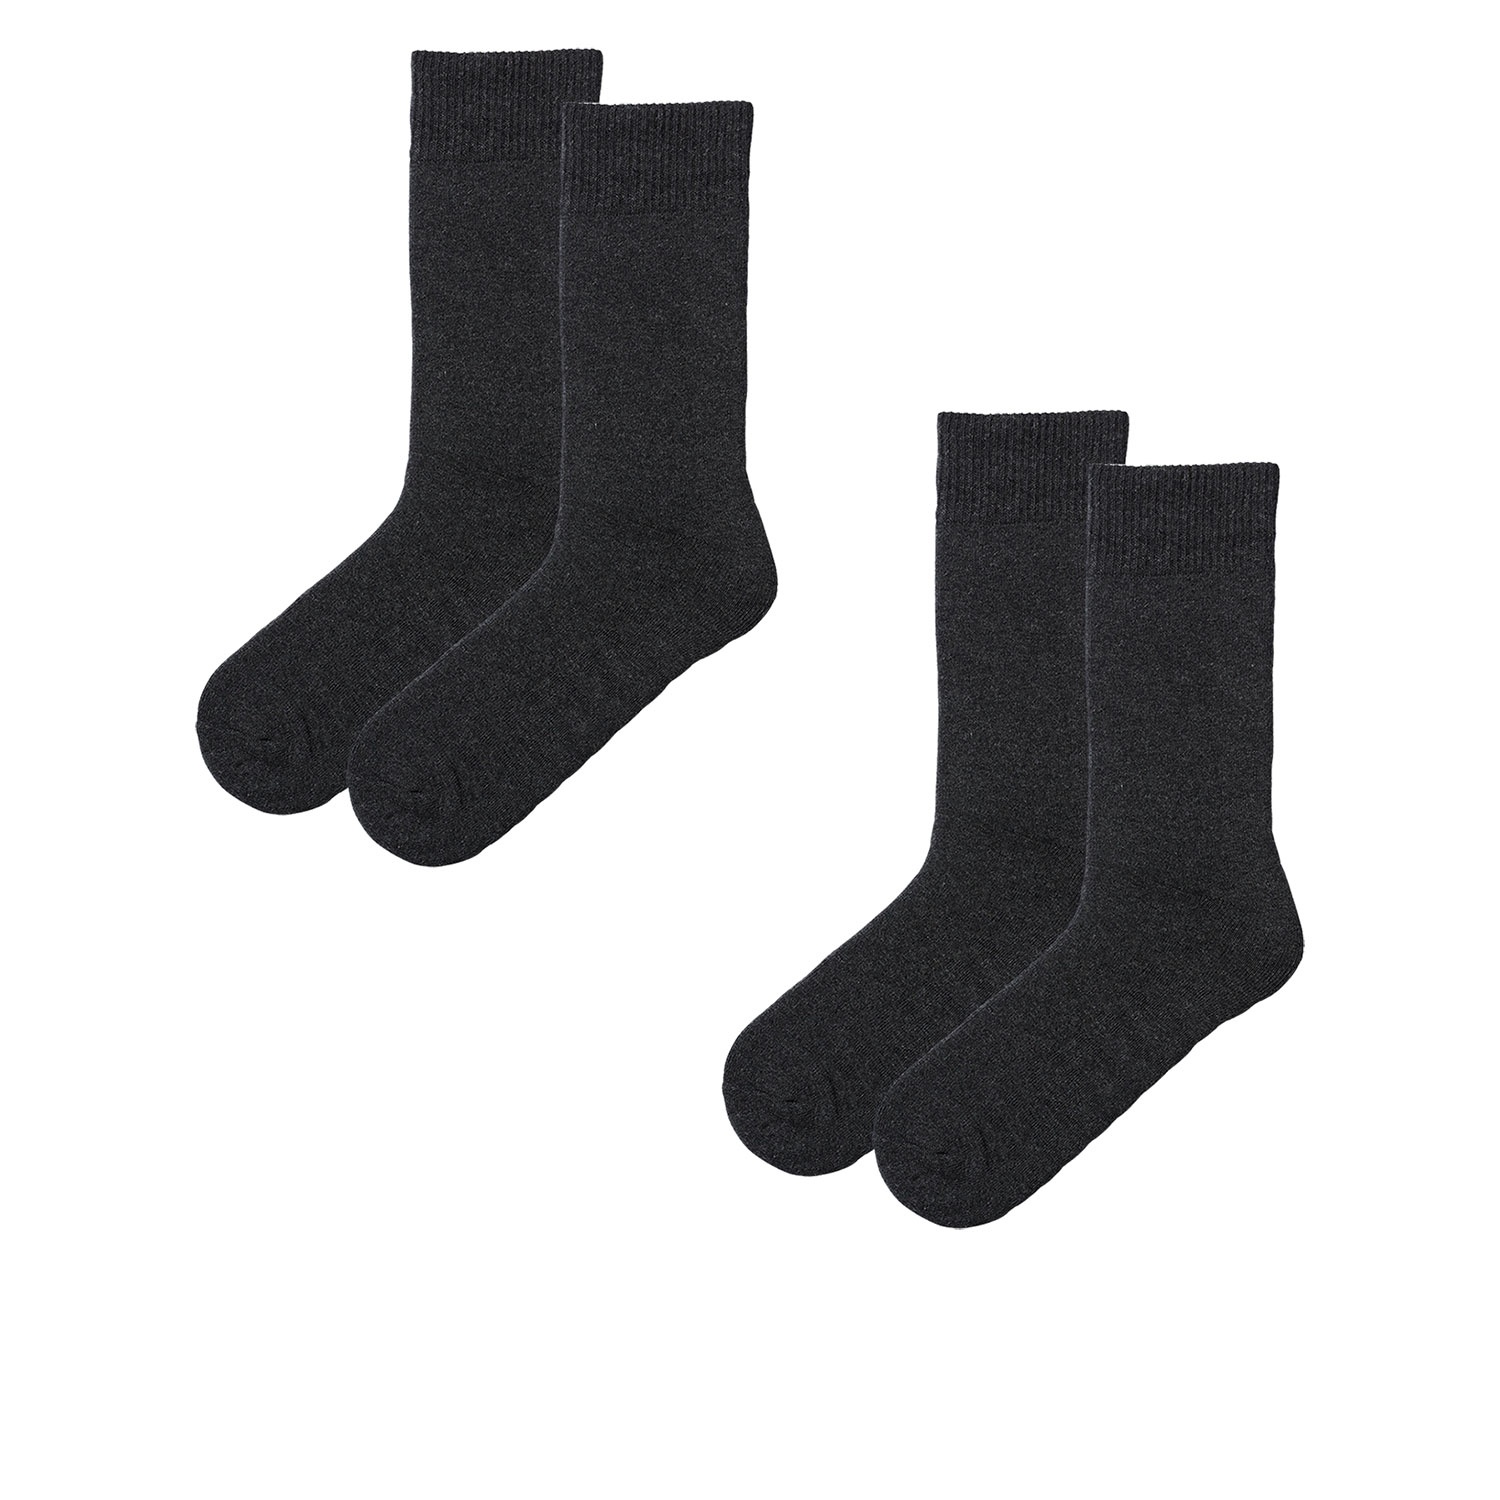 Damen und Herren Winter-Wellness-Socken, 2 Paar